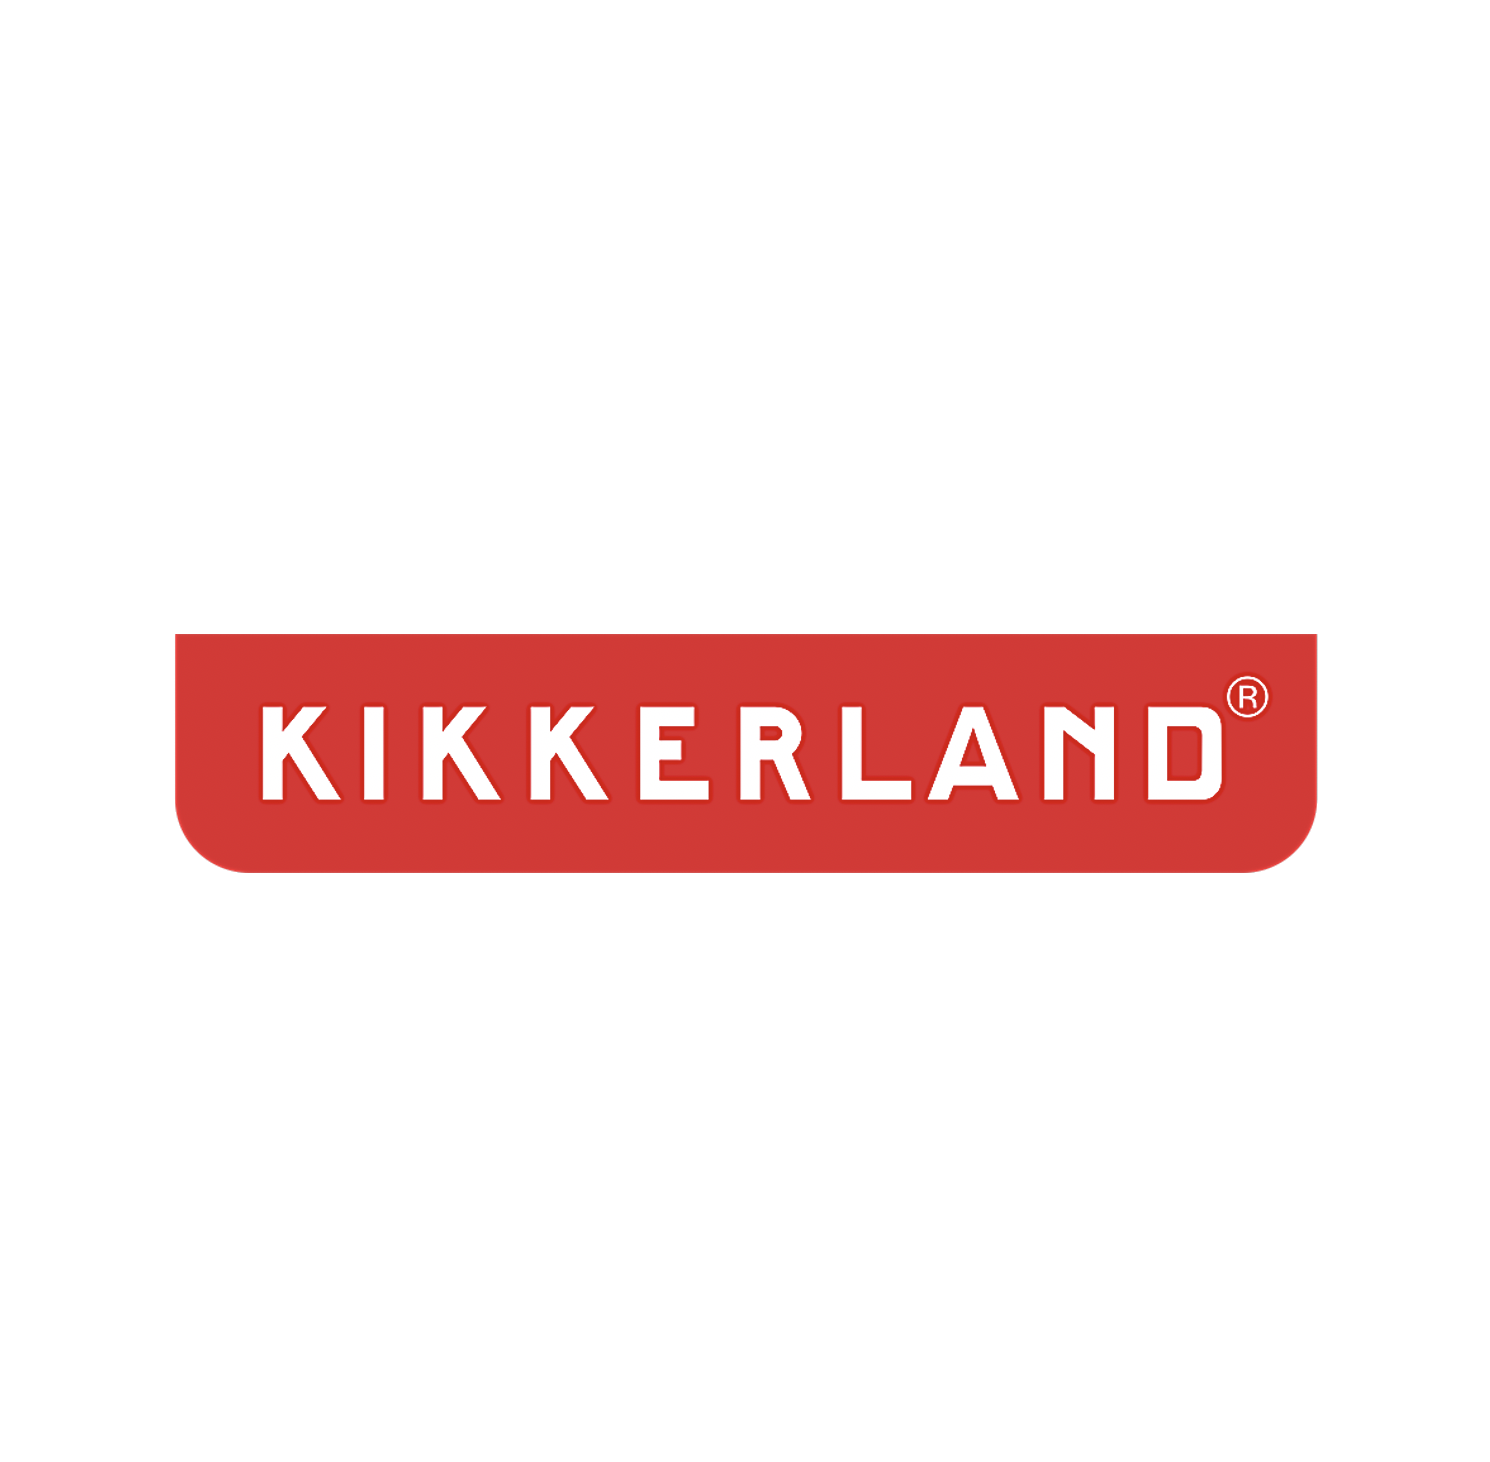 Kikkerland logo - white type on red background.